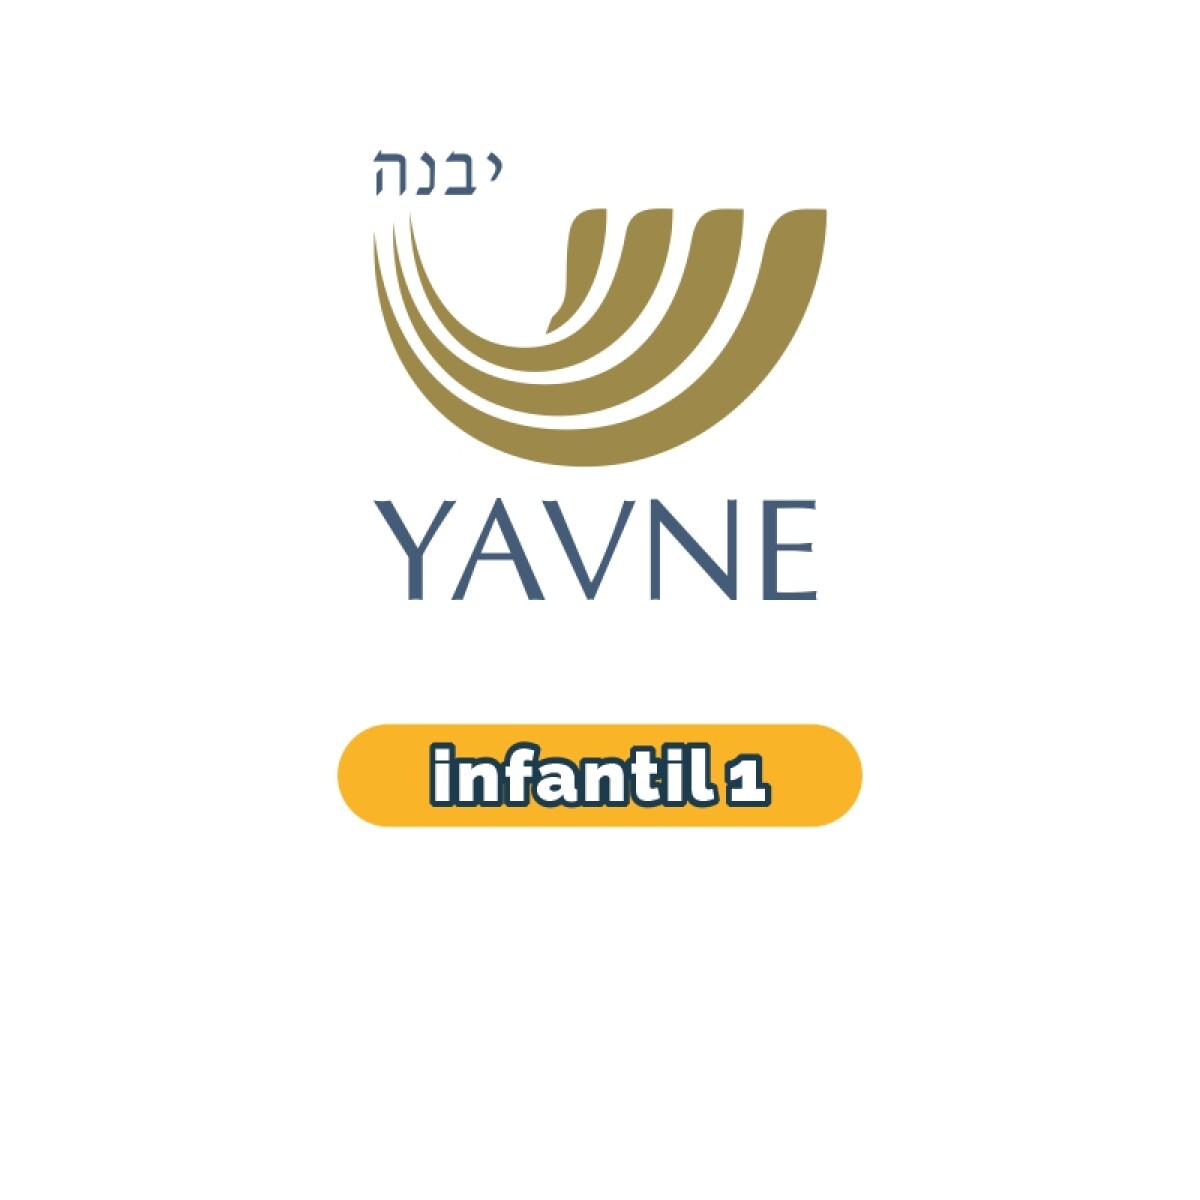 Lista de materiales - Infantil 1 YAVNE 